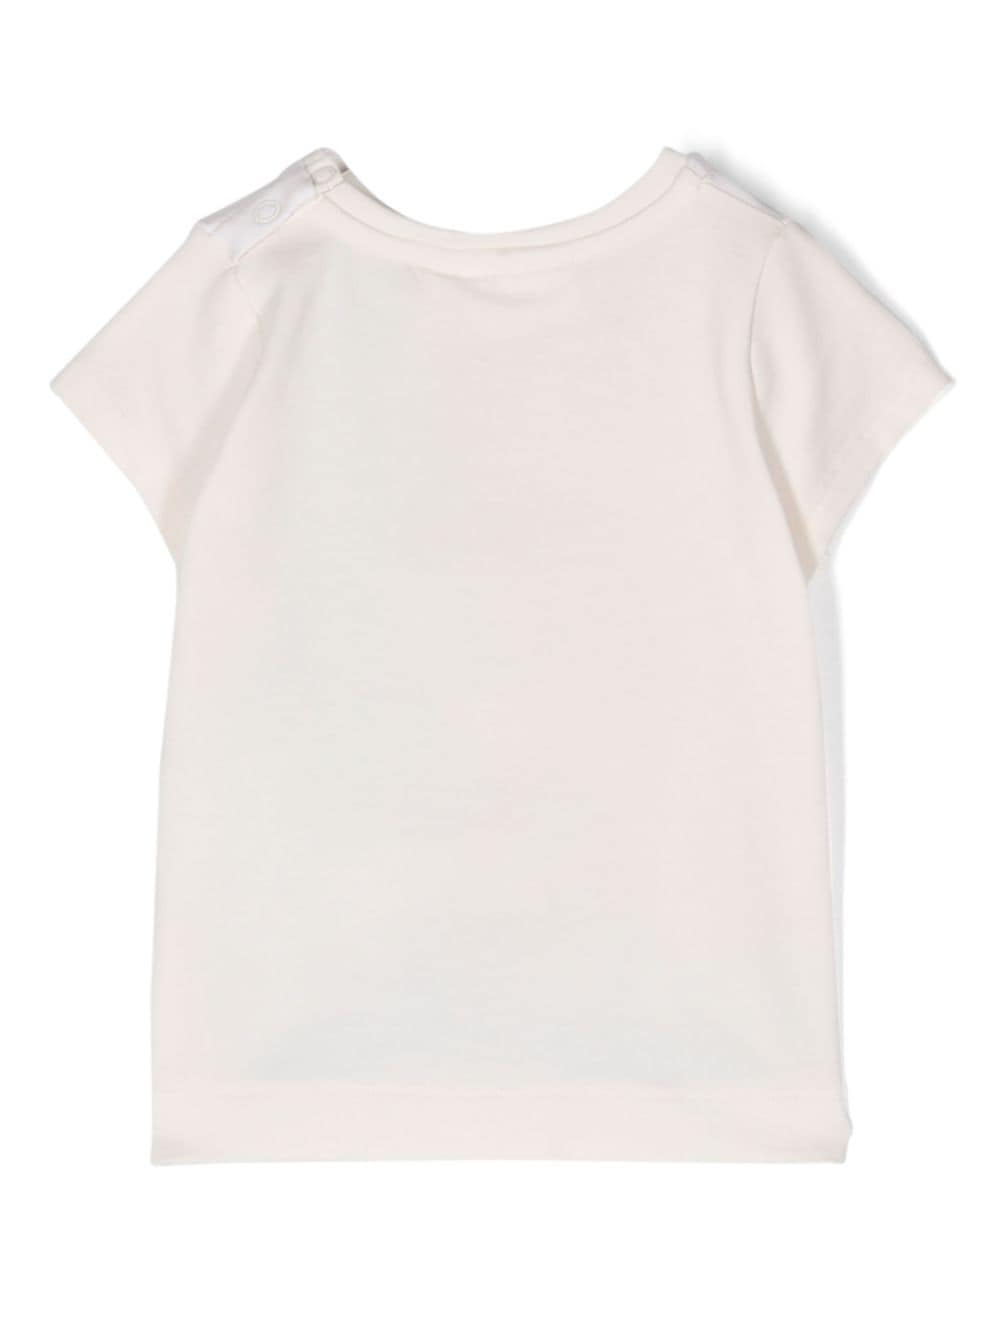 T-shirt nouveau-né beige/multicolore